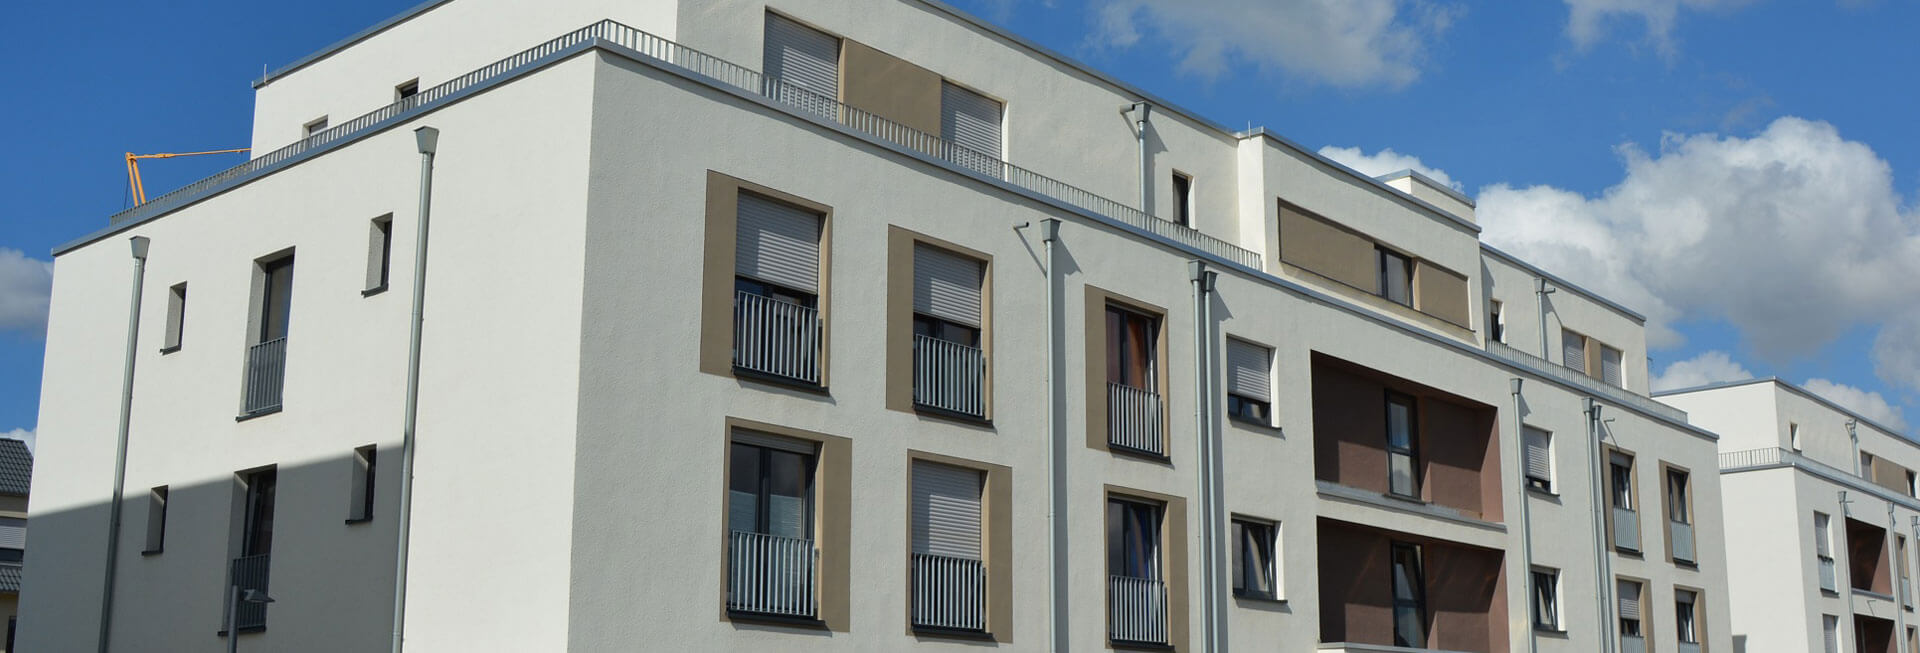 Blick von außen auf das inklusive Wohnhaus: Ein modernes, weiß gestrichenes Gebäude mit braunen Farbakzenten.